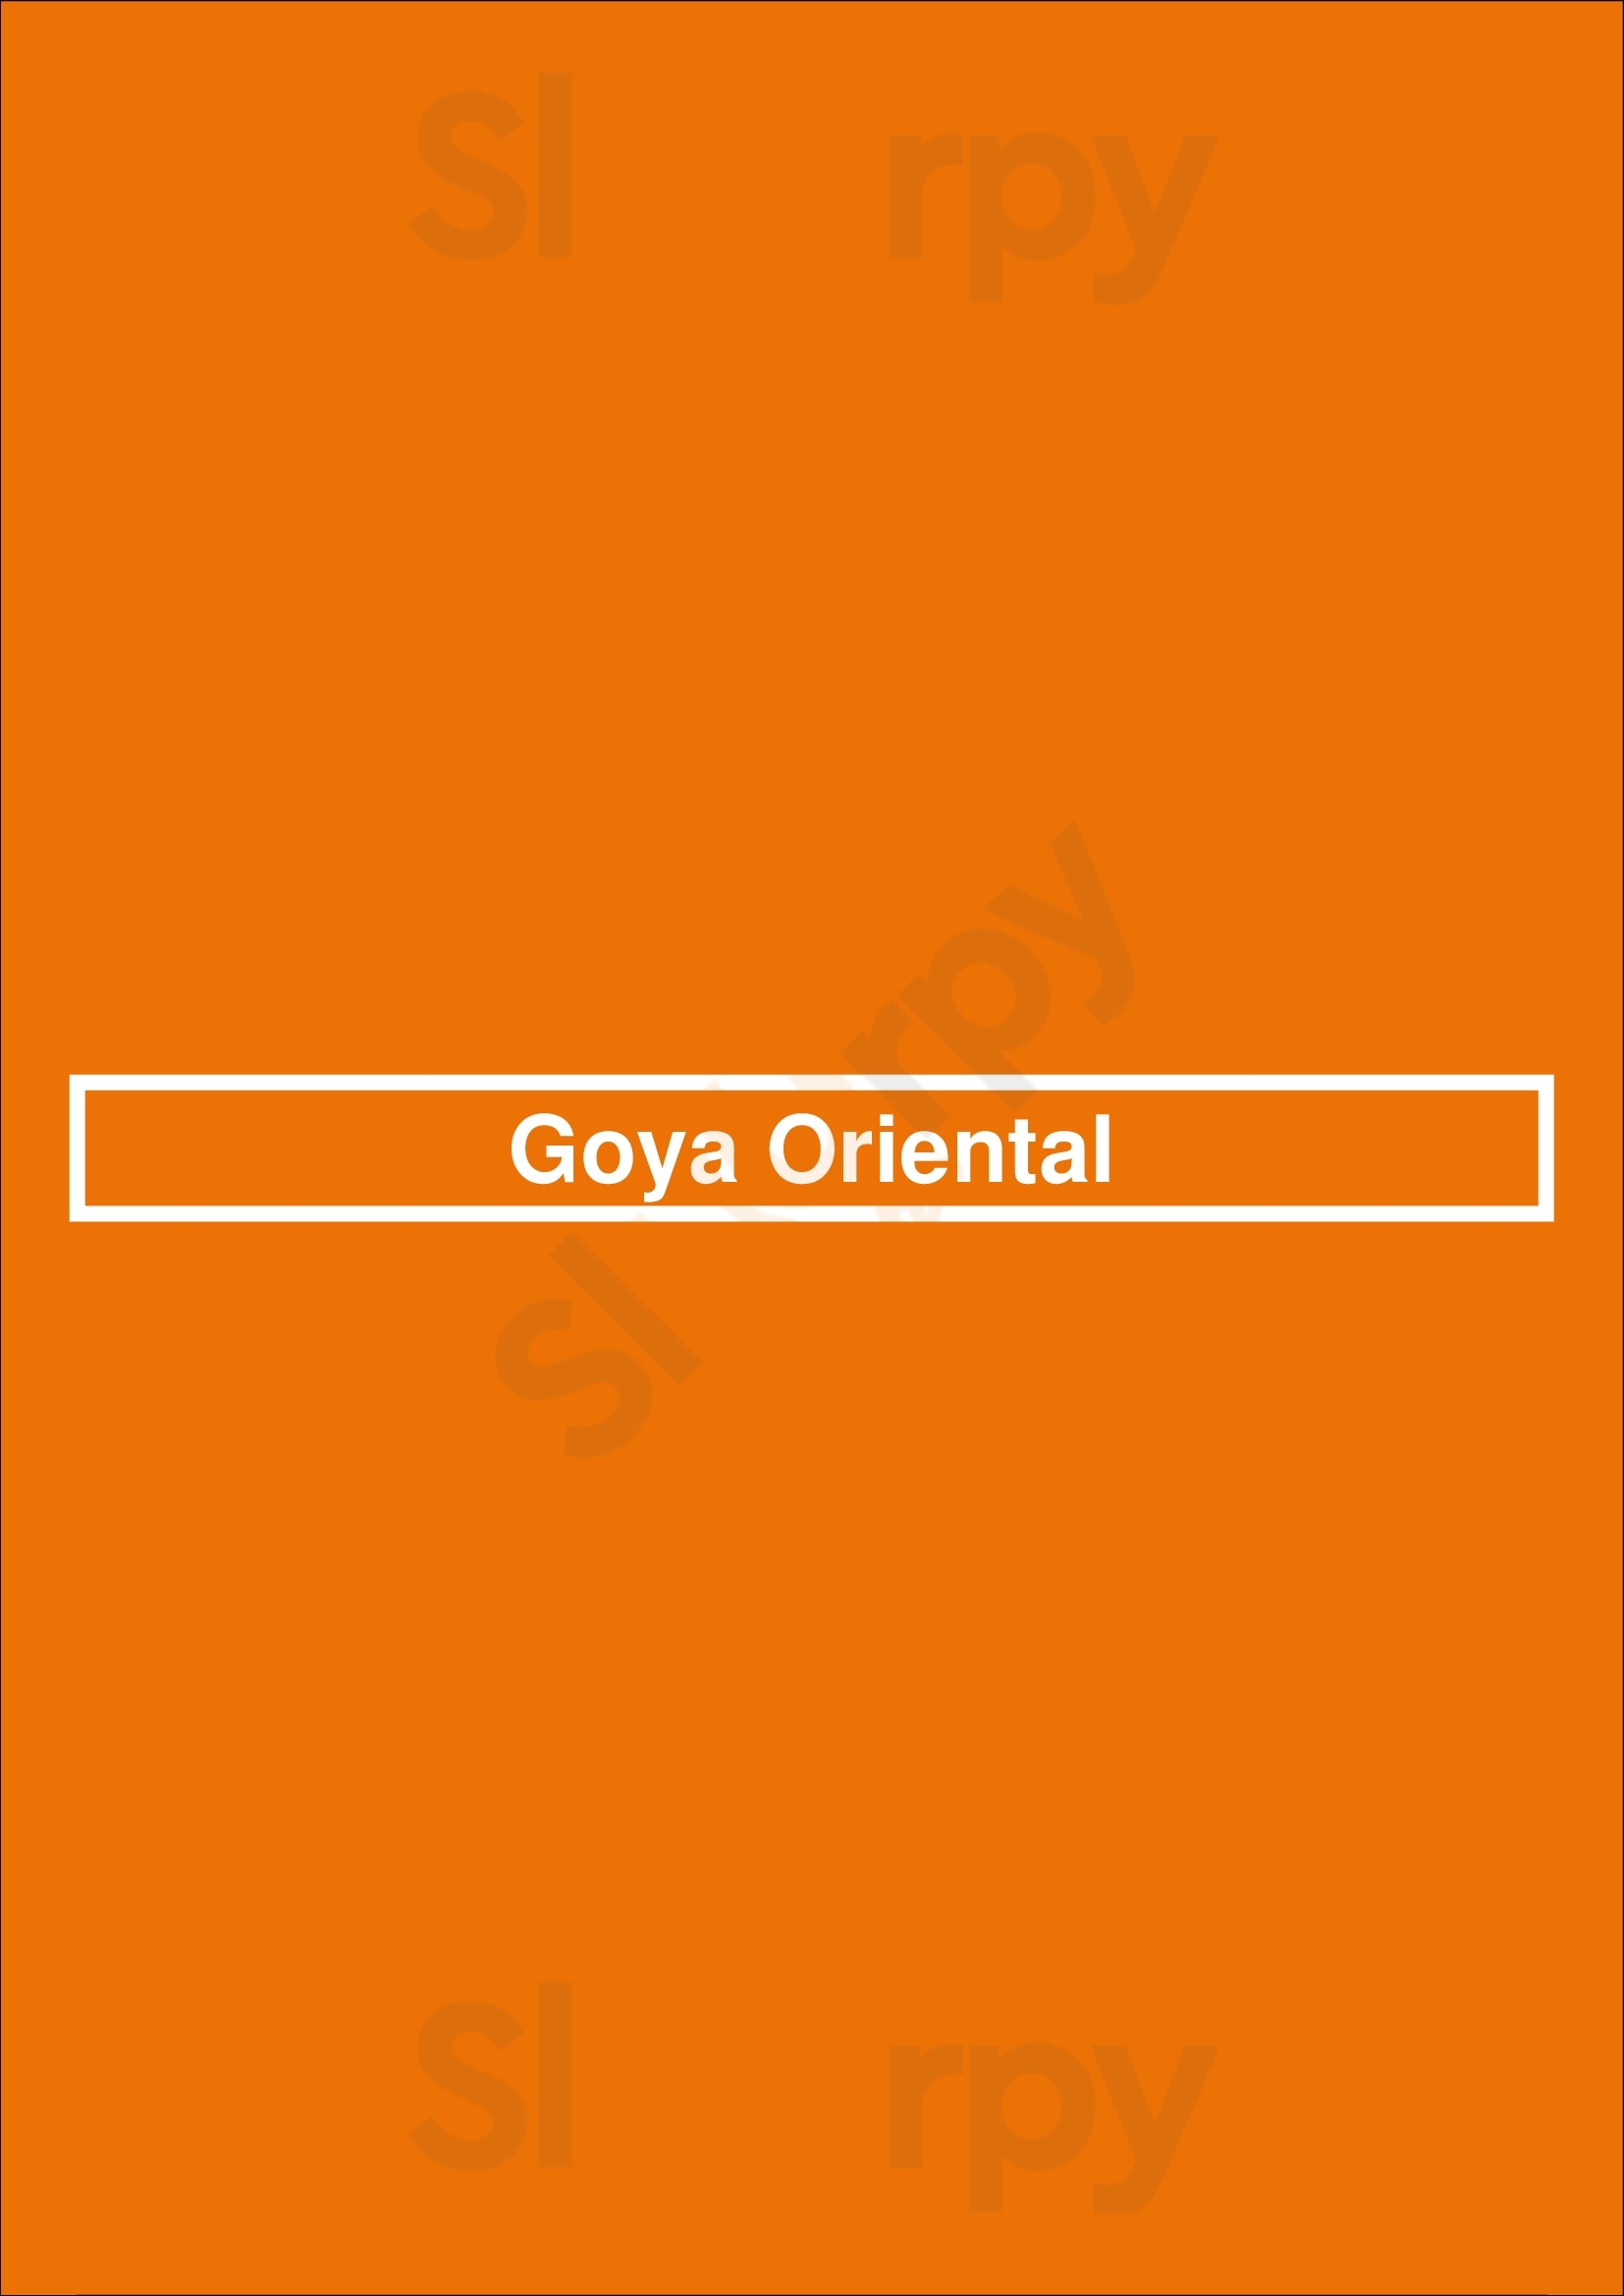 Goya Oriental Veenendaal Menu - 1